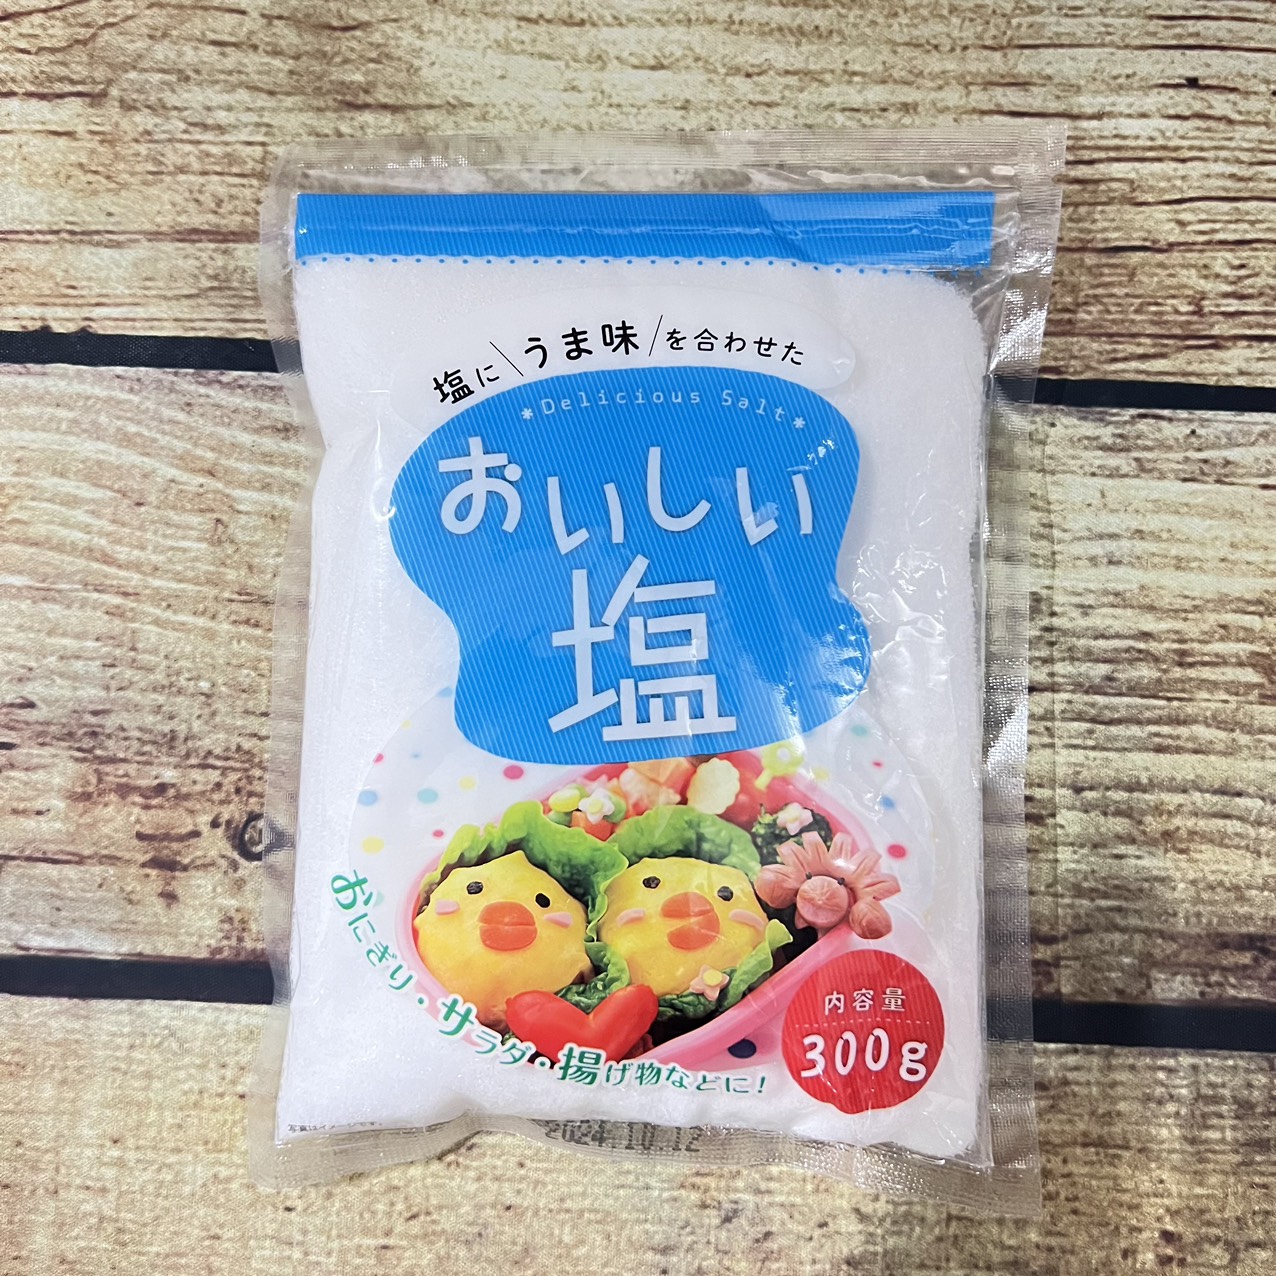 Muối Ăn Tinh Sạch Kobe Bussan Nhật Bản 300G | Gói nhỏ tiện lợi